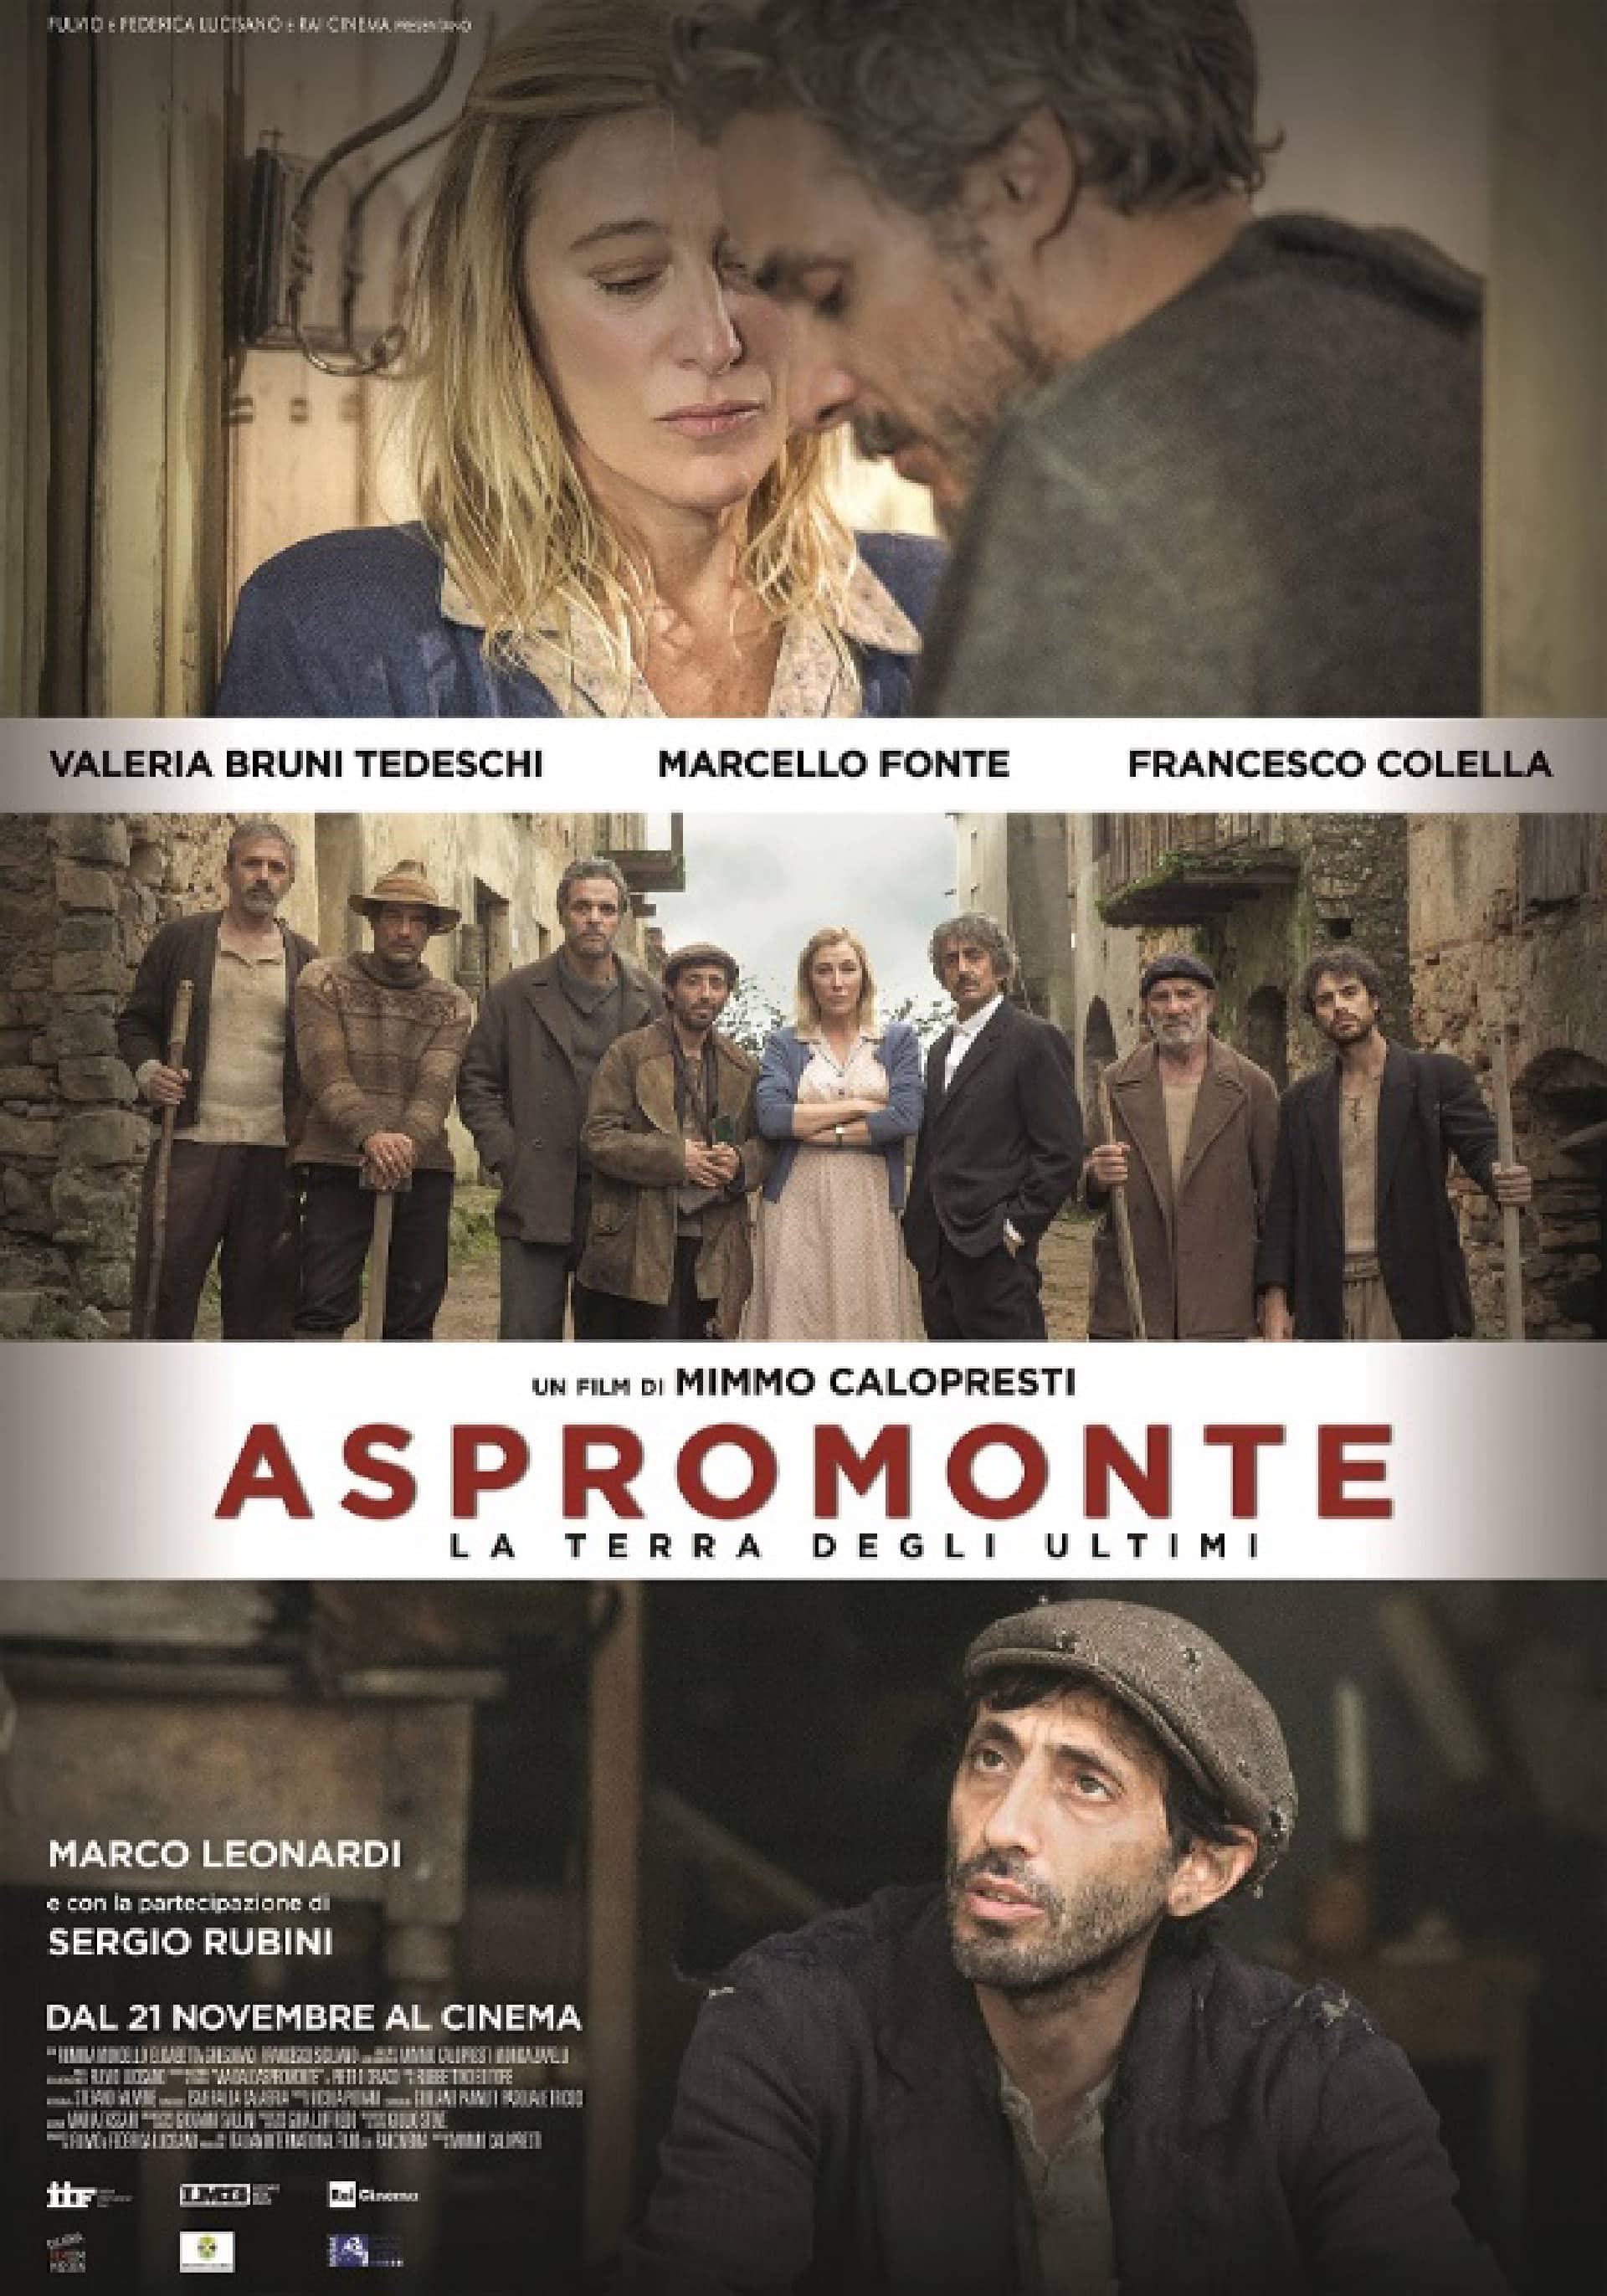 Aspromonte - La Terra degli ultimi, cinematographe.it